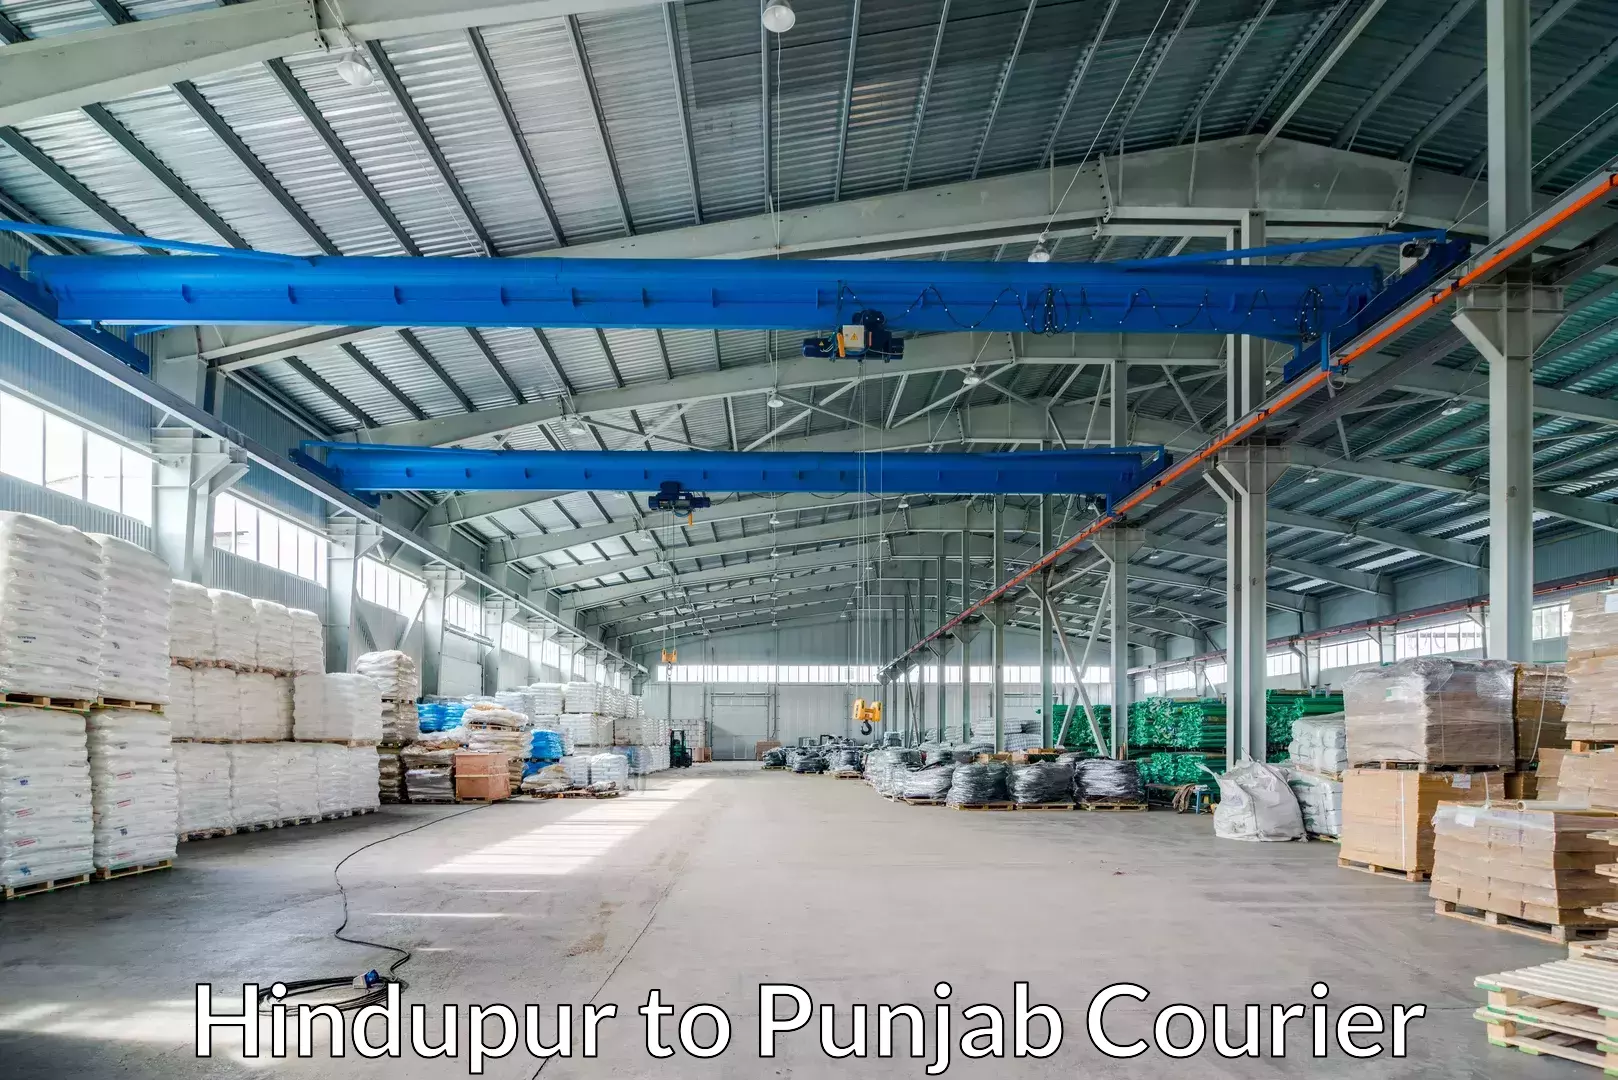 Furniture moving experts Hindupur to Punjab